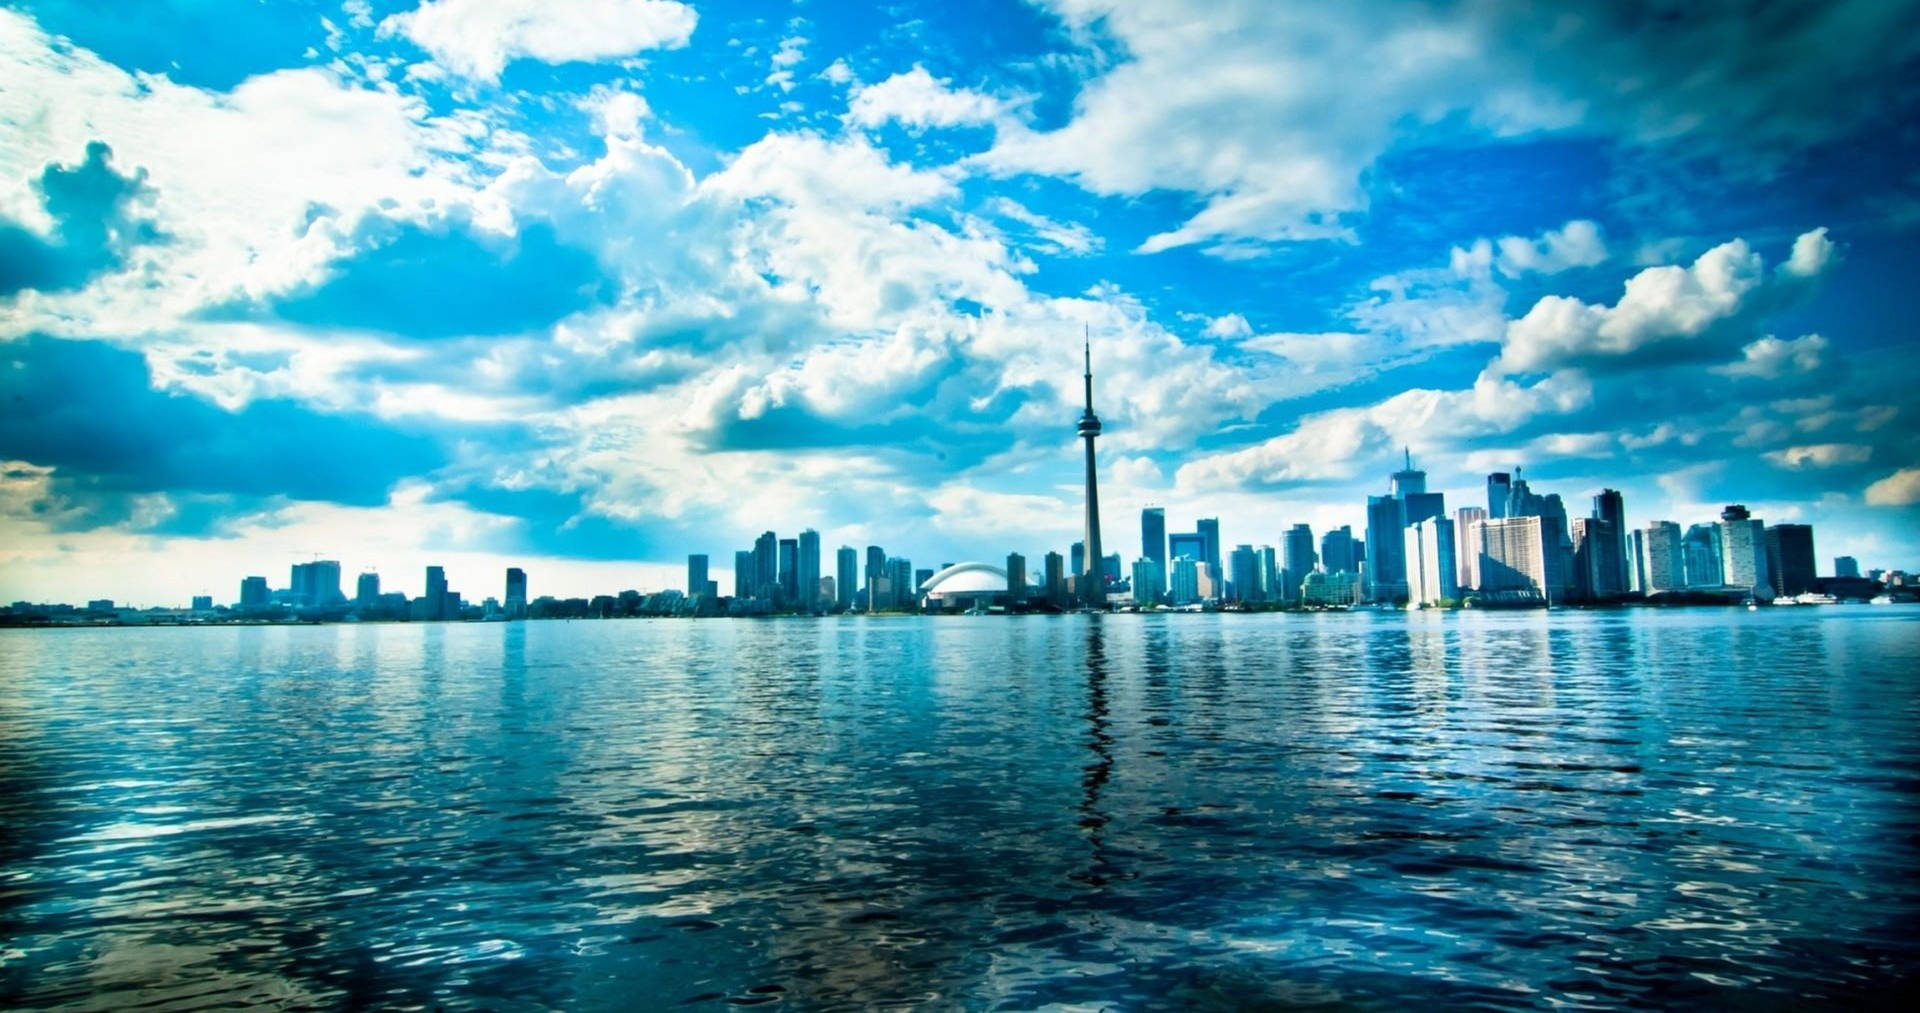 Torontowaterfront Metropolis Buildings: Edificios En El Centro De Toronto Frente Al Agua. Fondo de pantalla